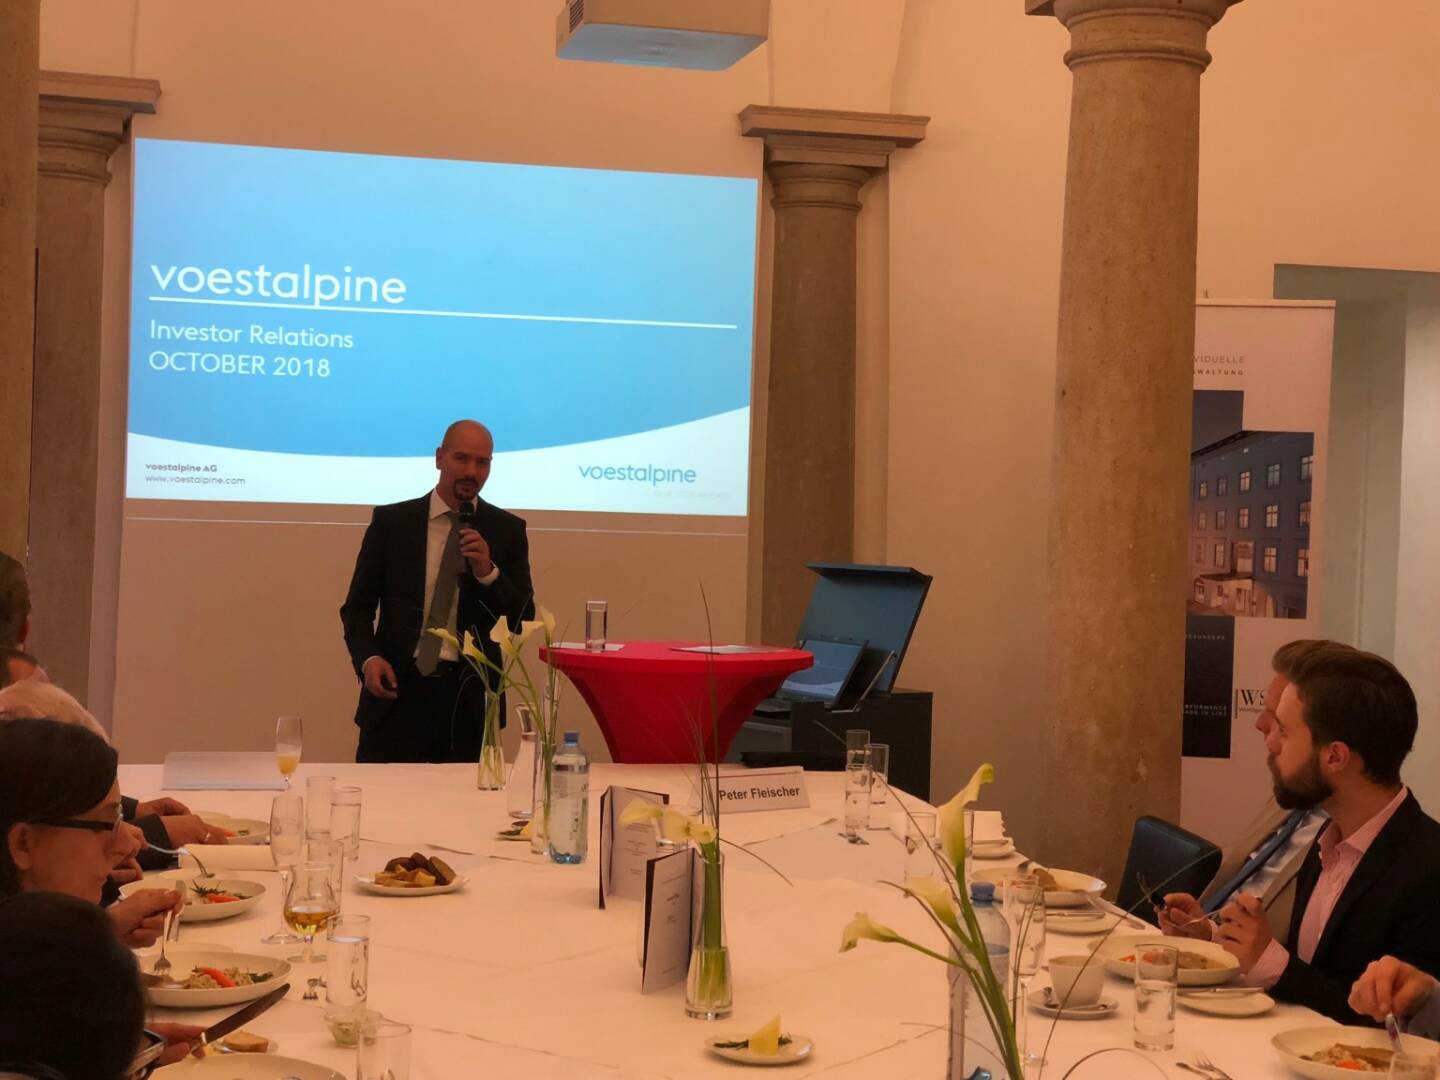 Präsentation des Österreich-Fonds der WSS Vermögensmanagement GmbH, voestalpine-IR-Chef Peter Fleischer stellte die Company vor